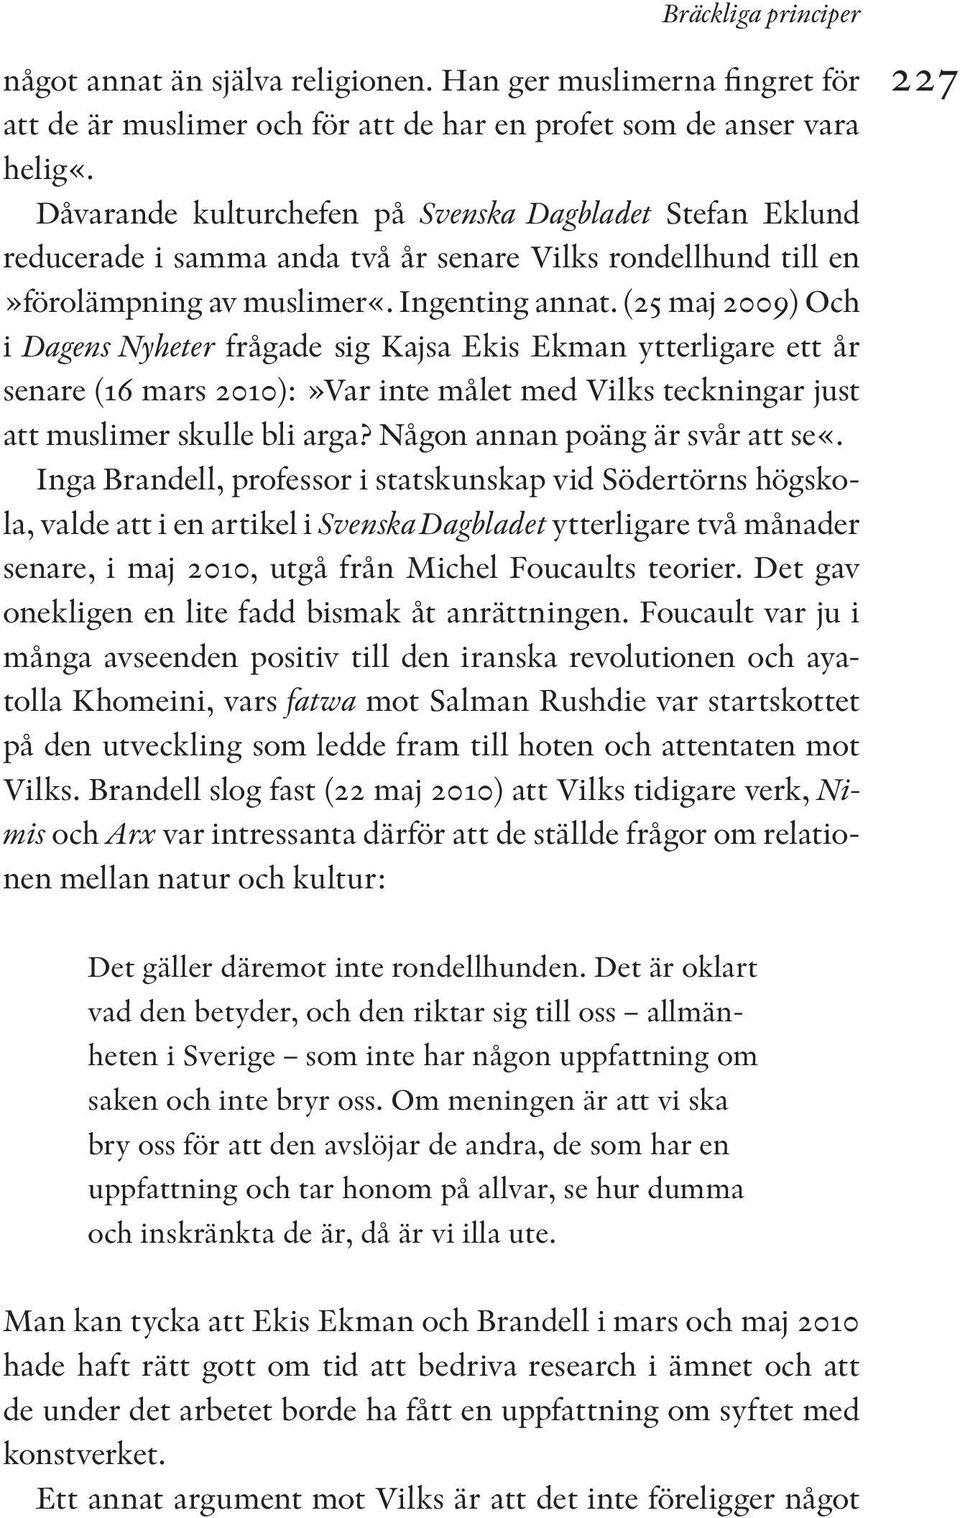 (25 maj 2009) Och i Dagens Nyheter frågade sig Kajsa Ekis Ekman ytterligare ett år senare (16 mars 2010):»Var inte målet med Vilks teckningar just att muslimer skulle bli arga?